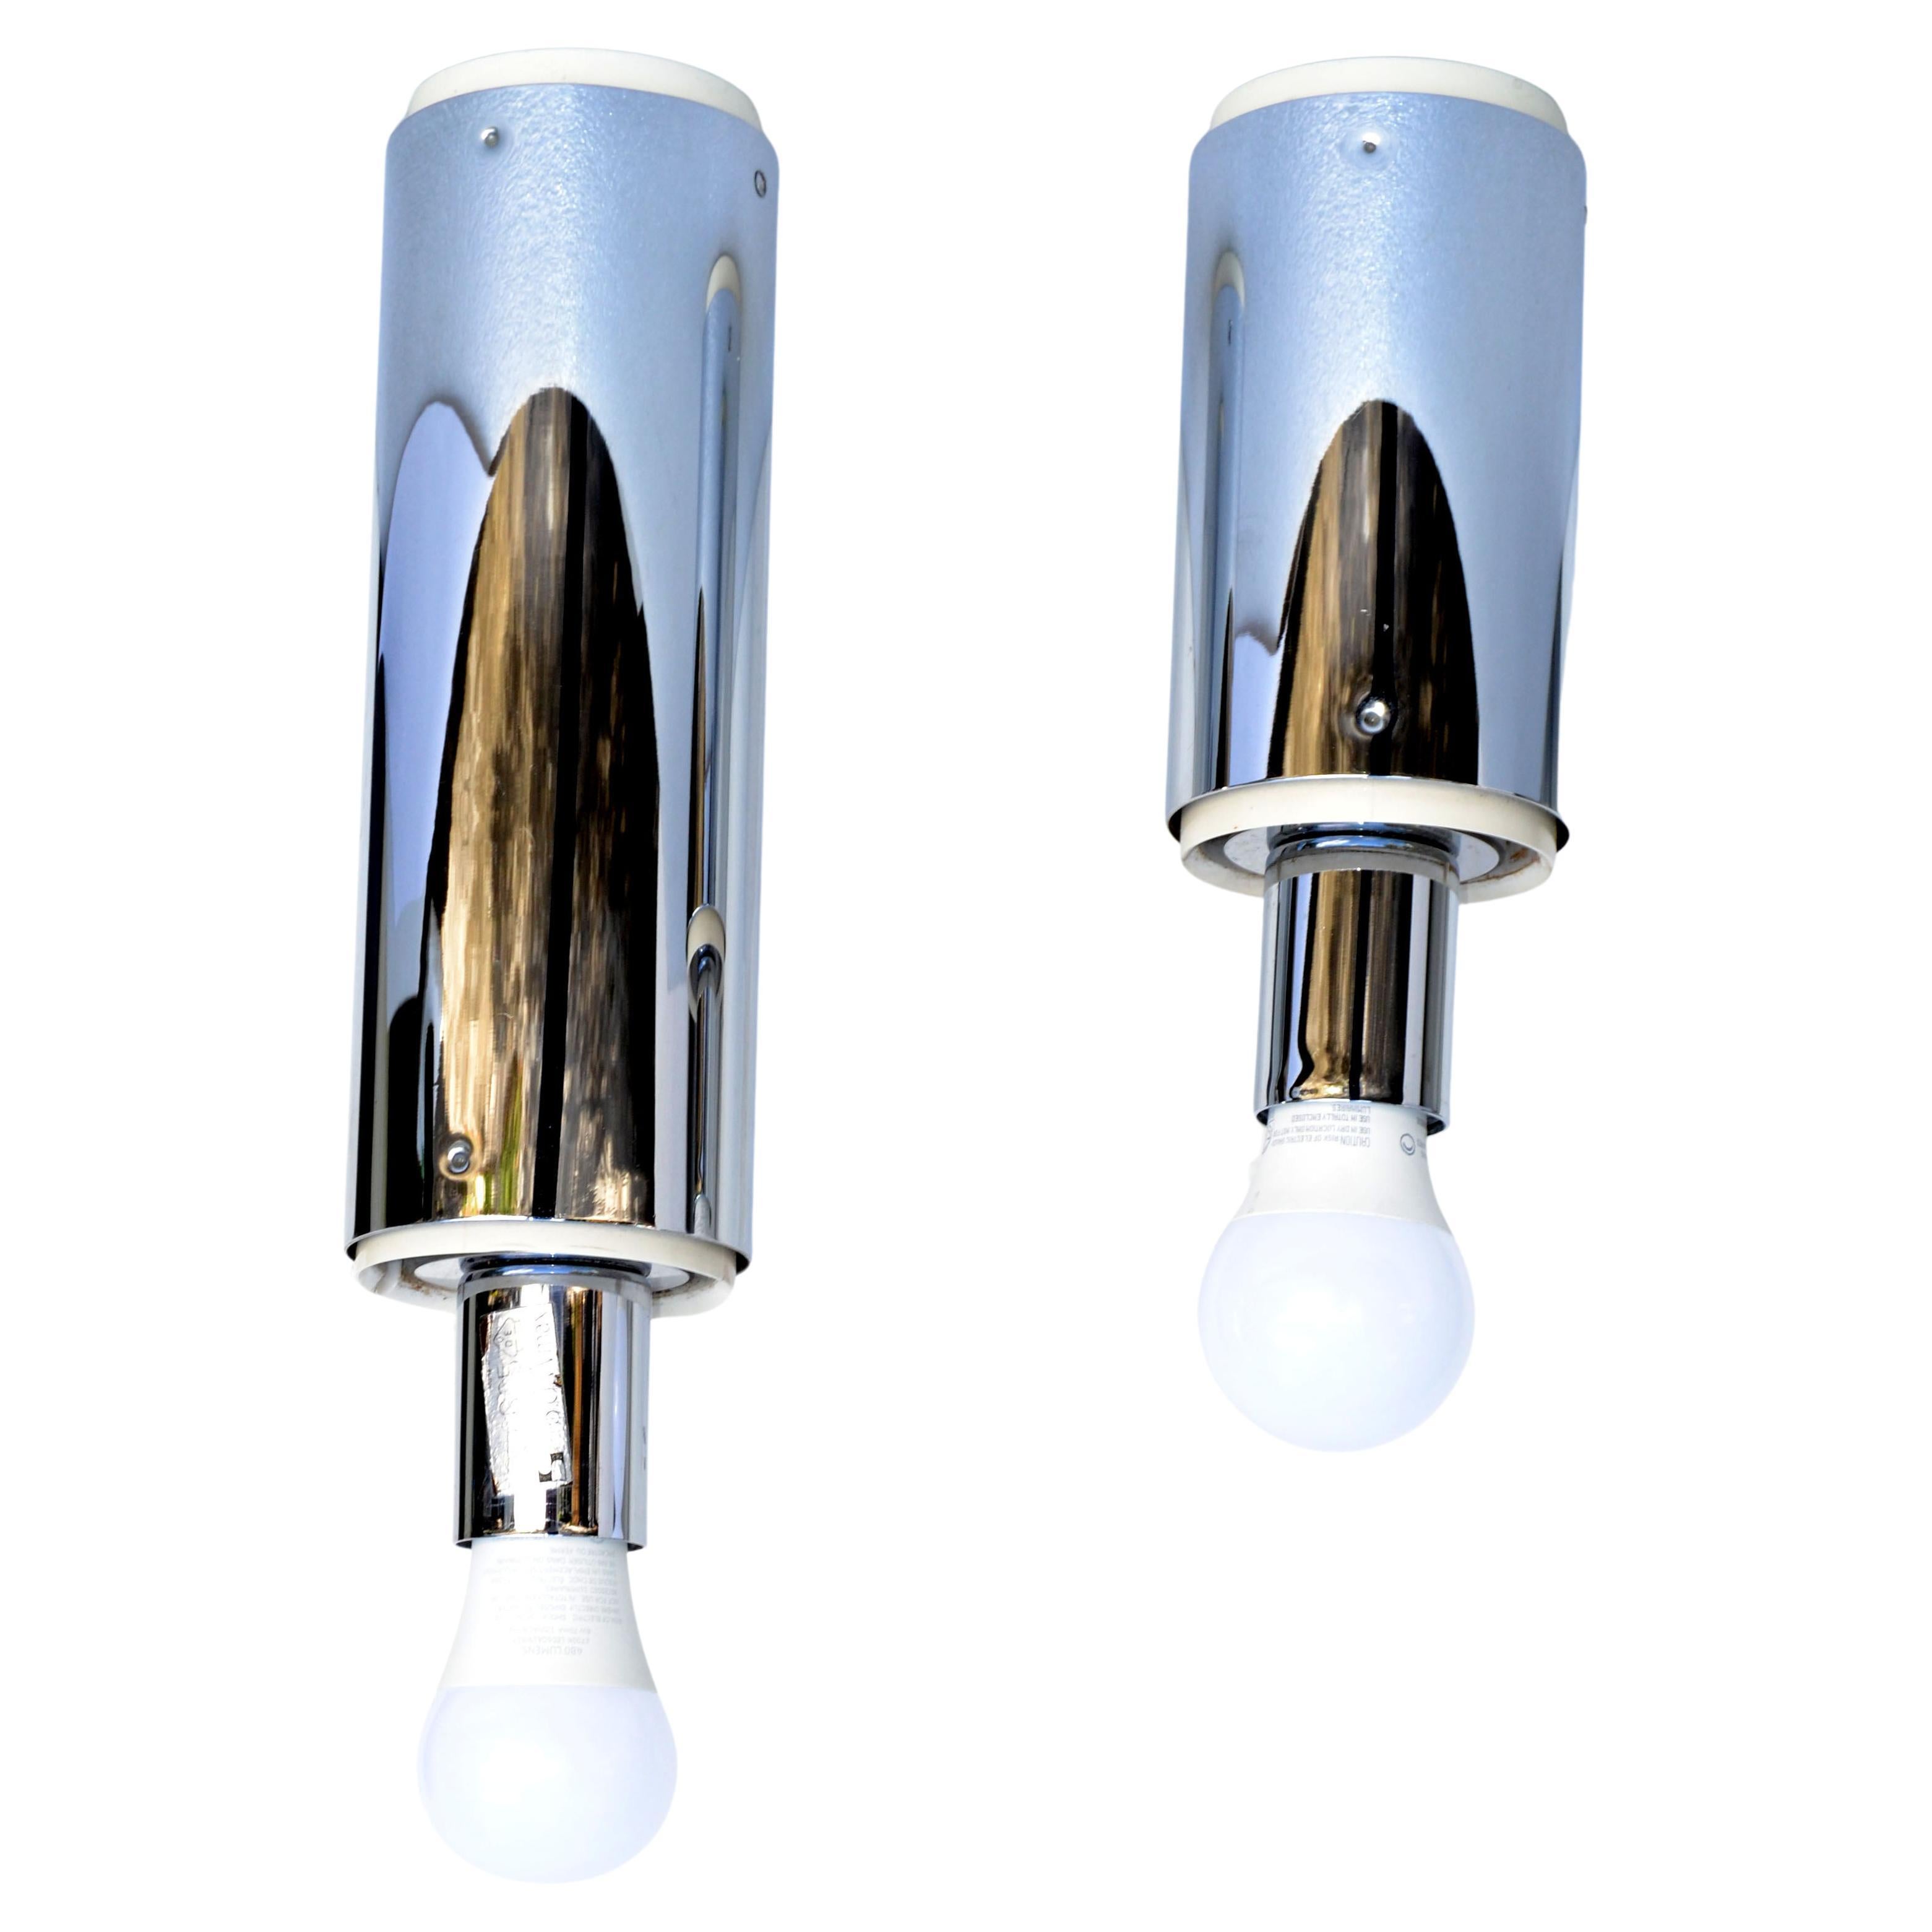 Ensemble de 2 luminaires chromés, plafonniers, appliques murales conçus par le designer japonais Motoko Ishii en 1970 et fabriqués par Staff Leuchten en Allemagne de l'Ouest.
Chaque lampe tubulaire peut recevoir une ampoule ordinaire ou